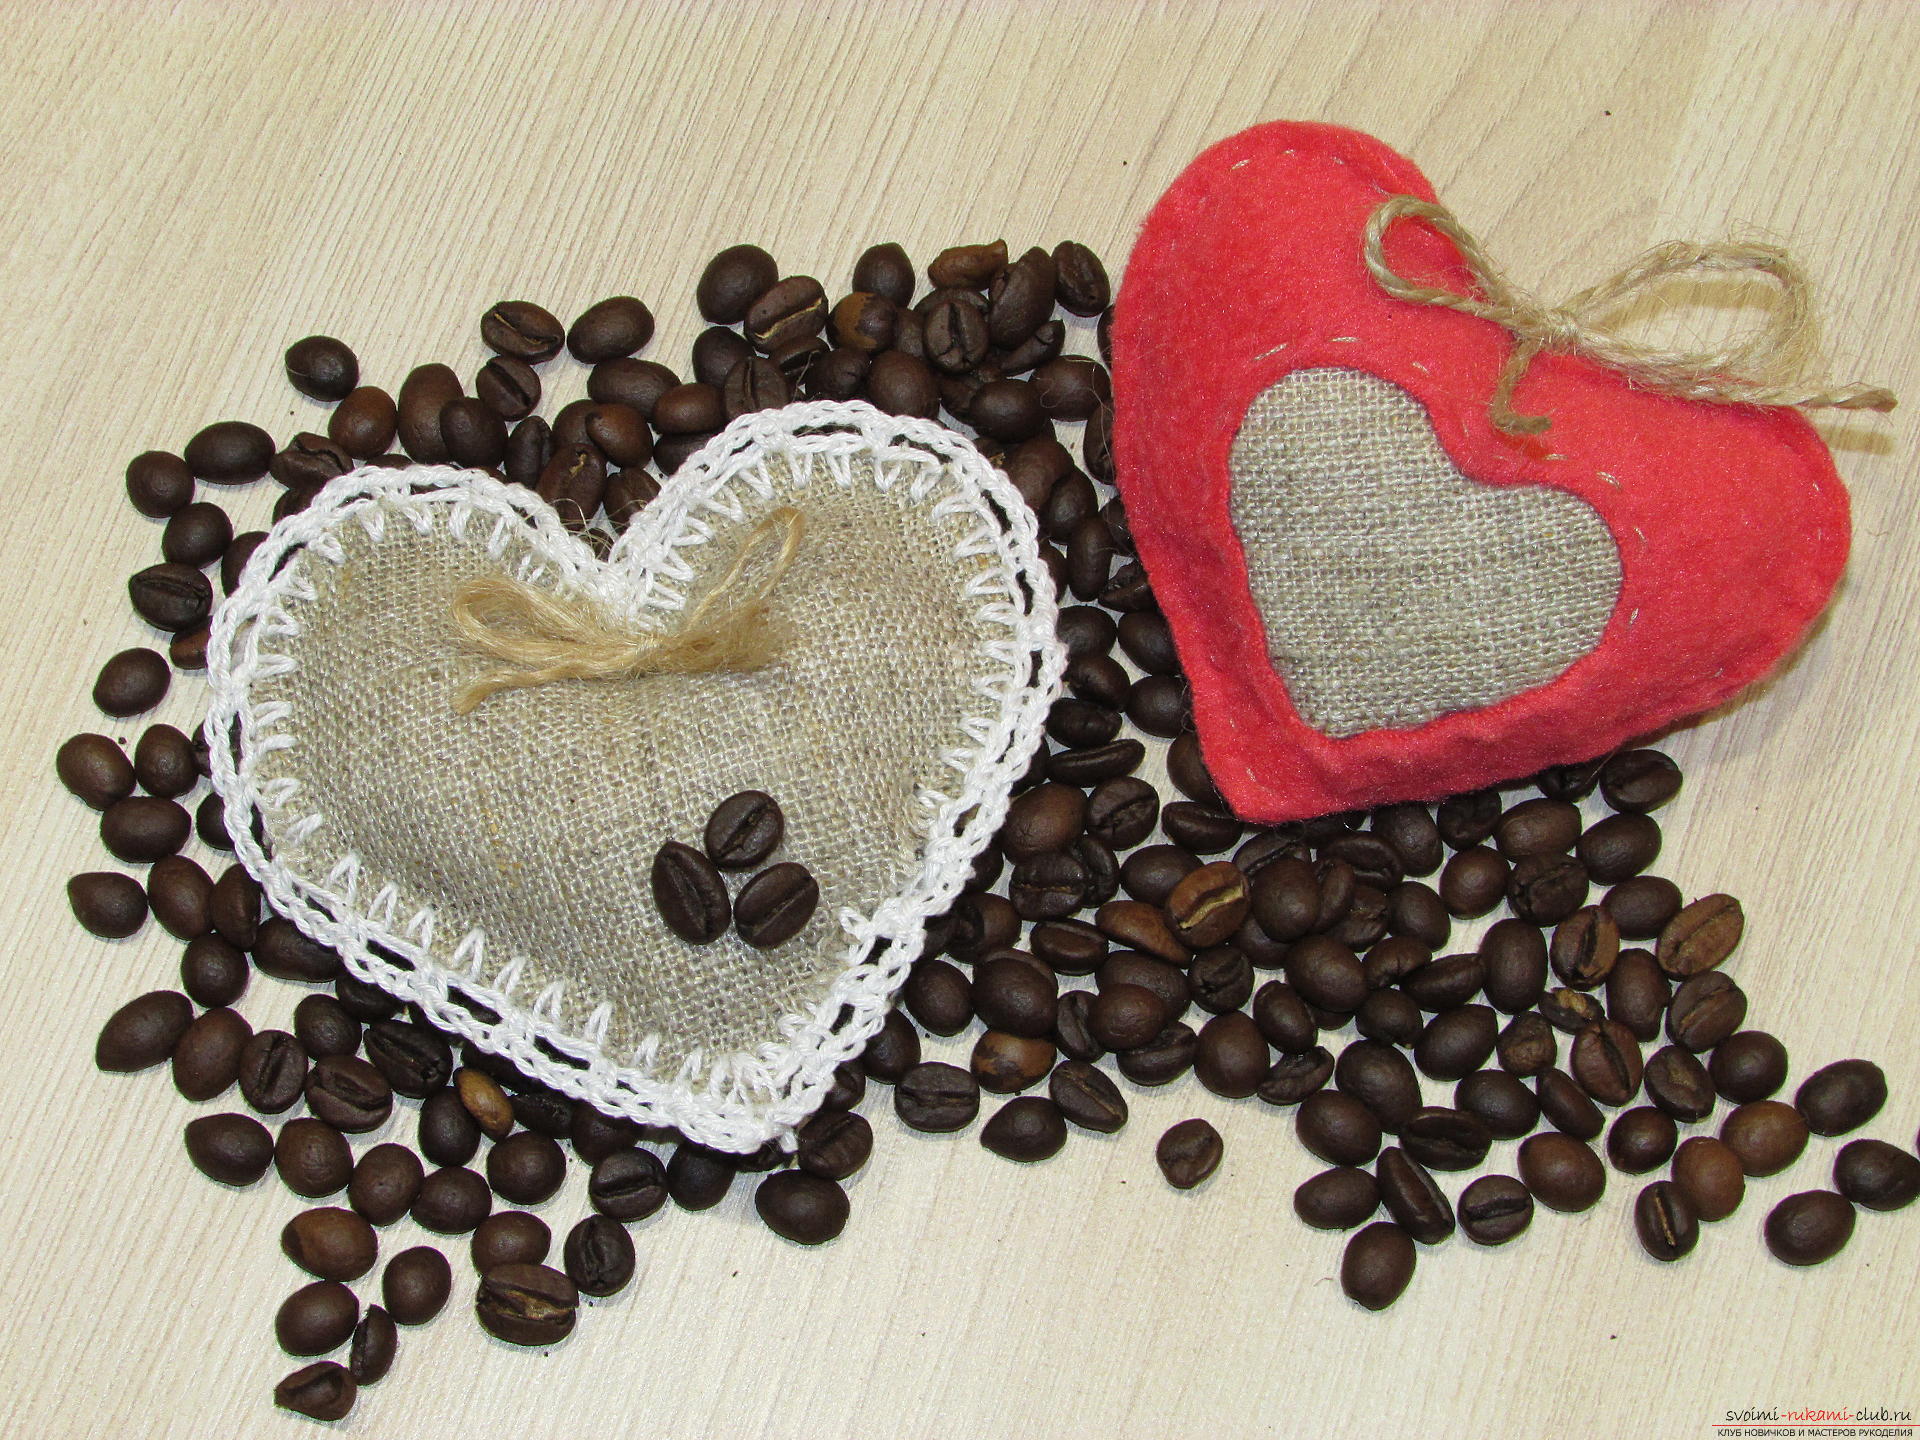 Deze masterclass leert je hoe je een artefact van koffiebonen maakt - een aromatisch kussen. Foto # 1